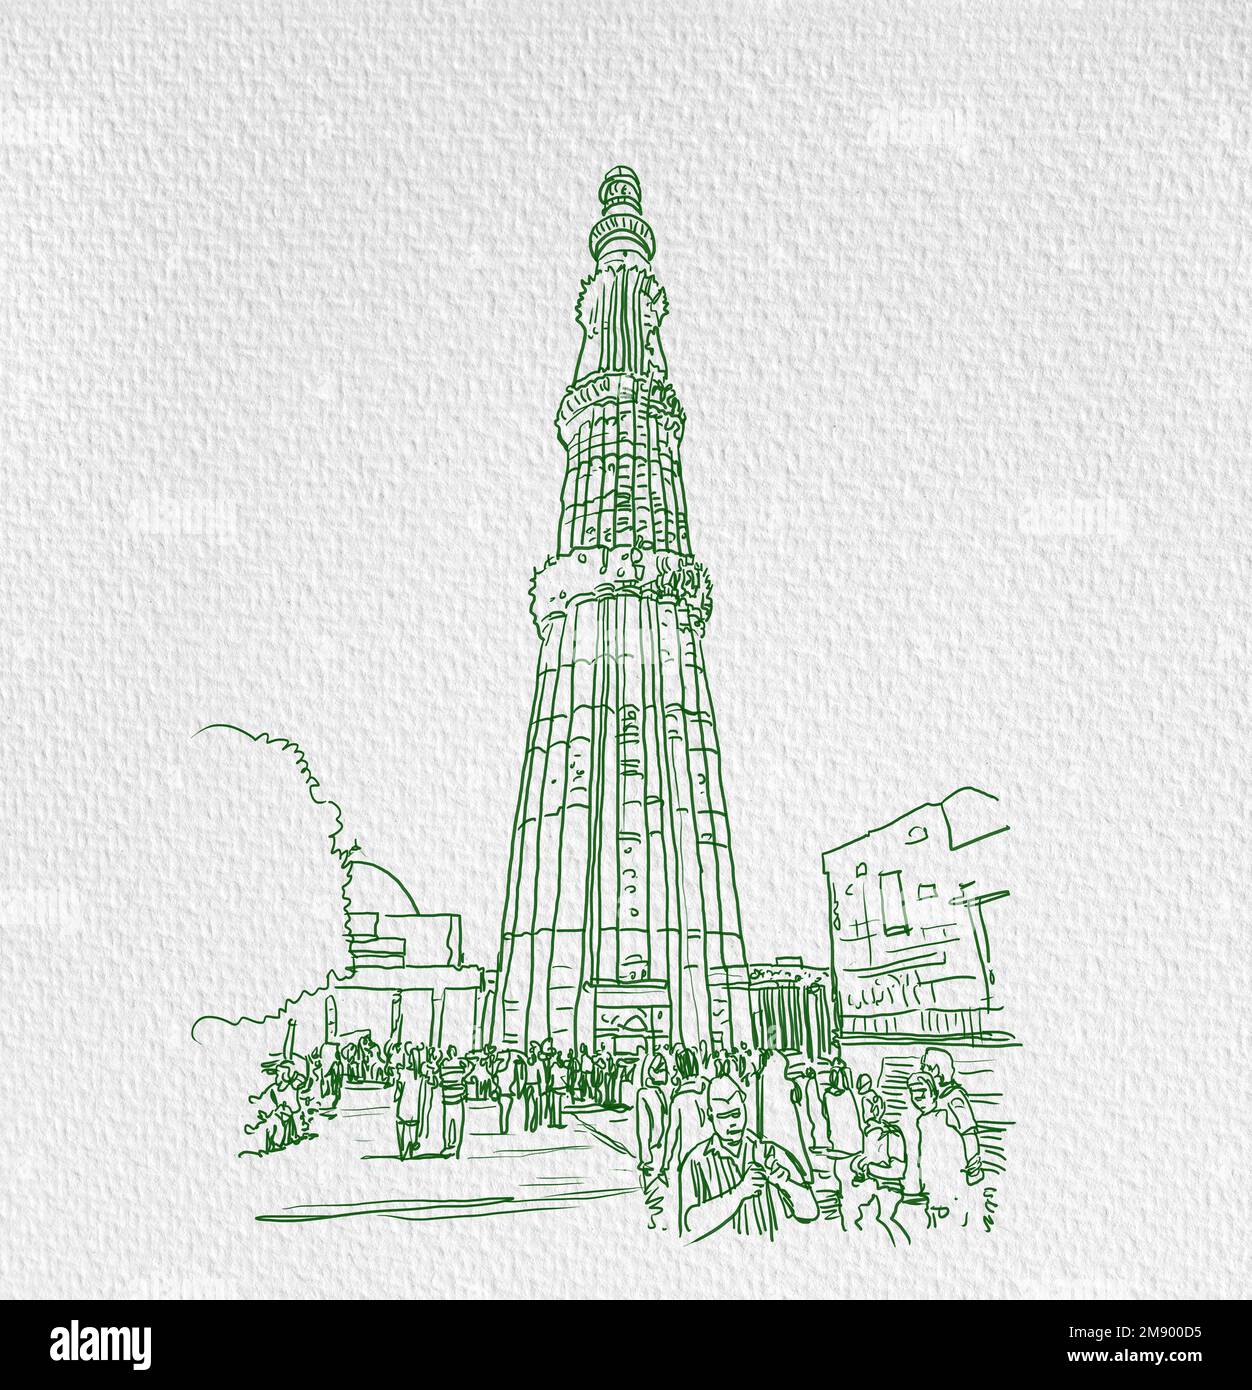 How to draw Qutub Minar step by step so easy - YouTube-saigonsouth.com.vn